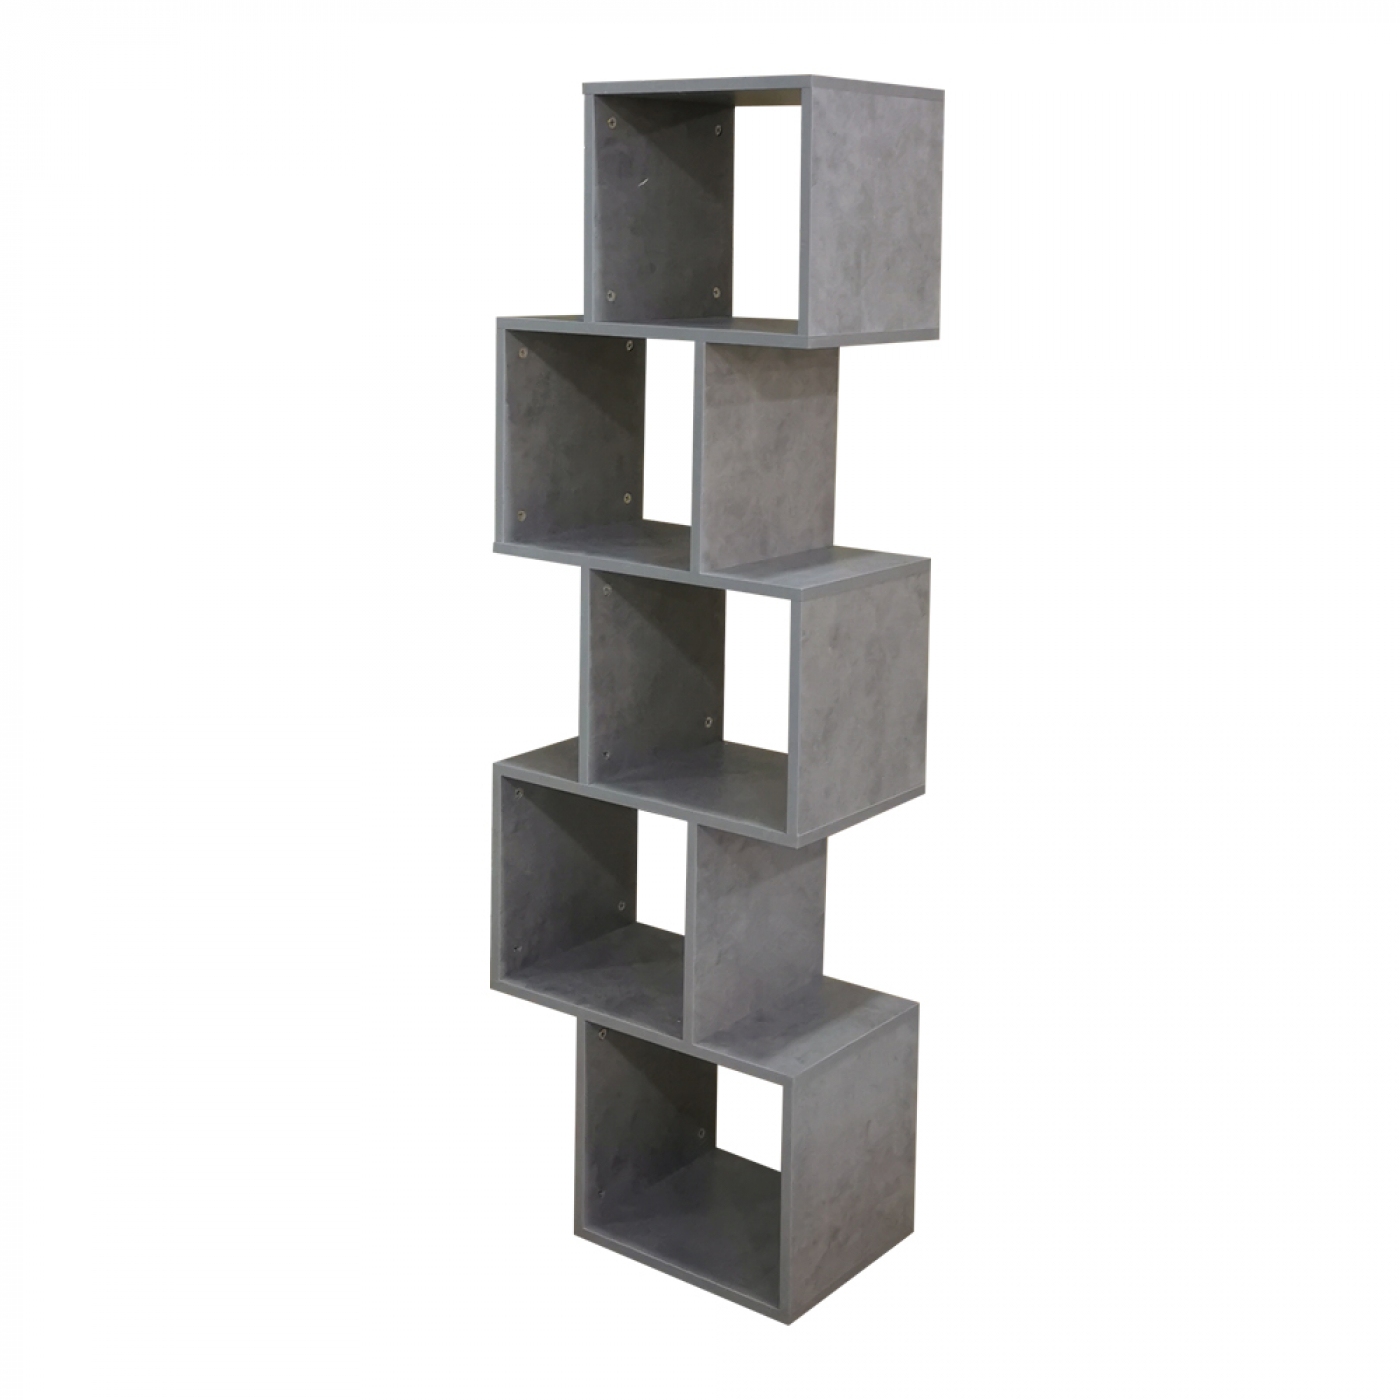 Tot ziens De Alpen schildpad Vakkenkast roomdivider gestapeld kubus design Yoep 5 vakken grijs beton  look - Meubel Plein